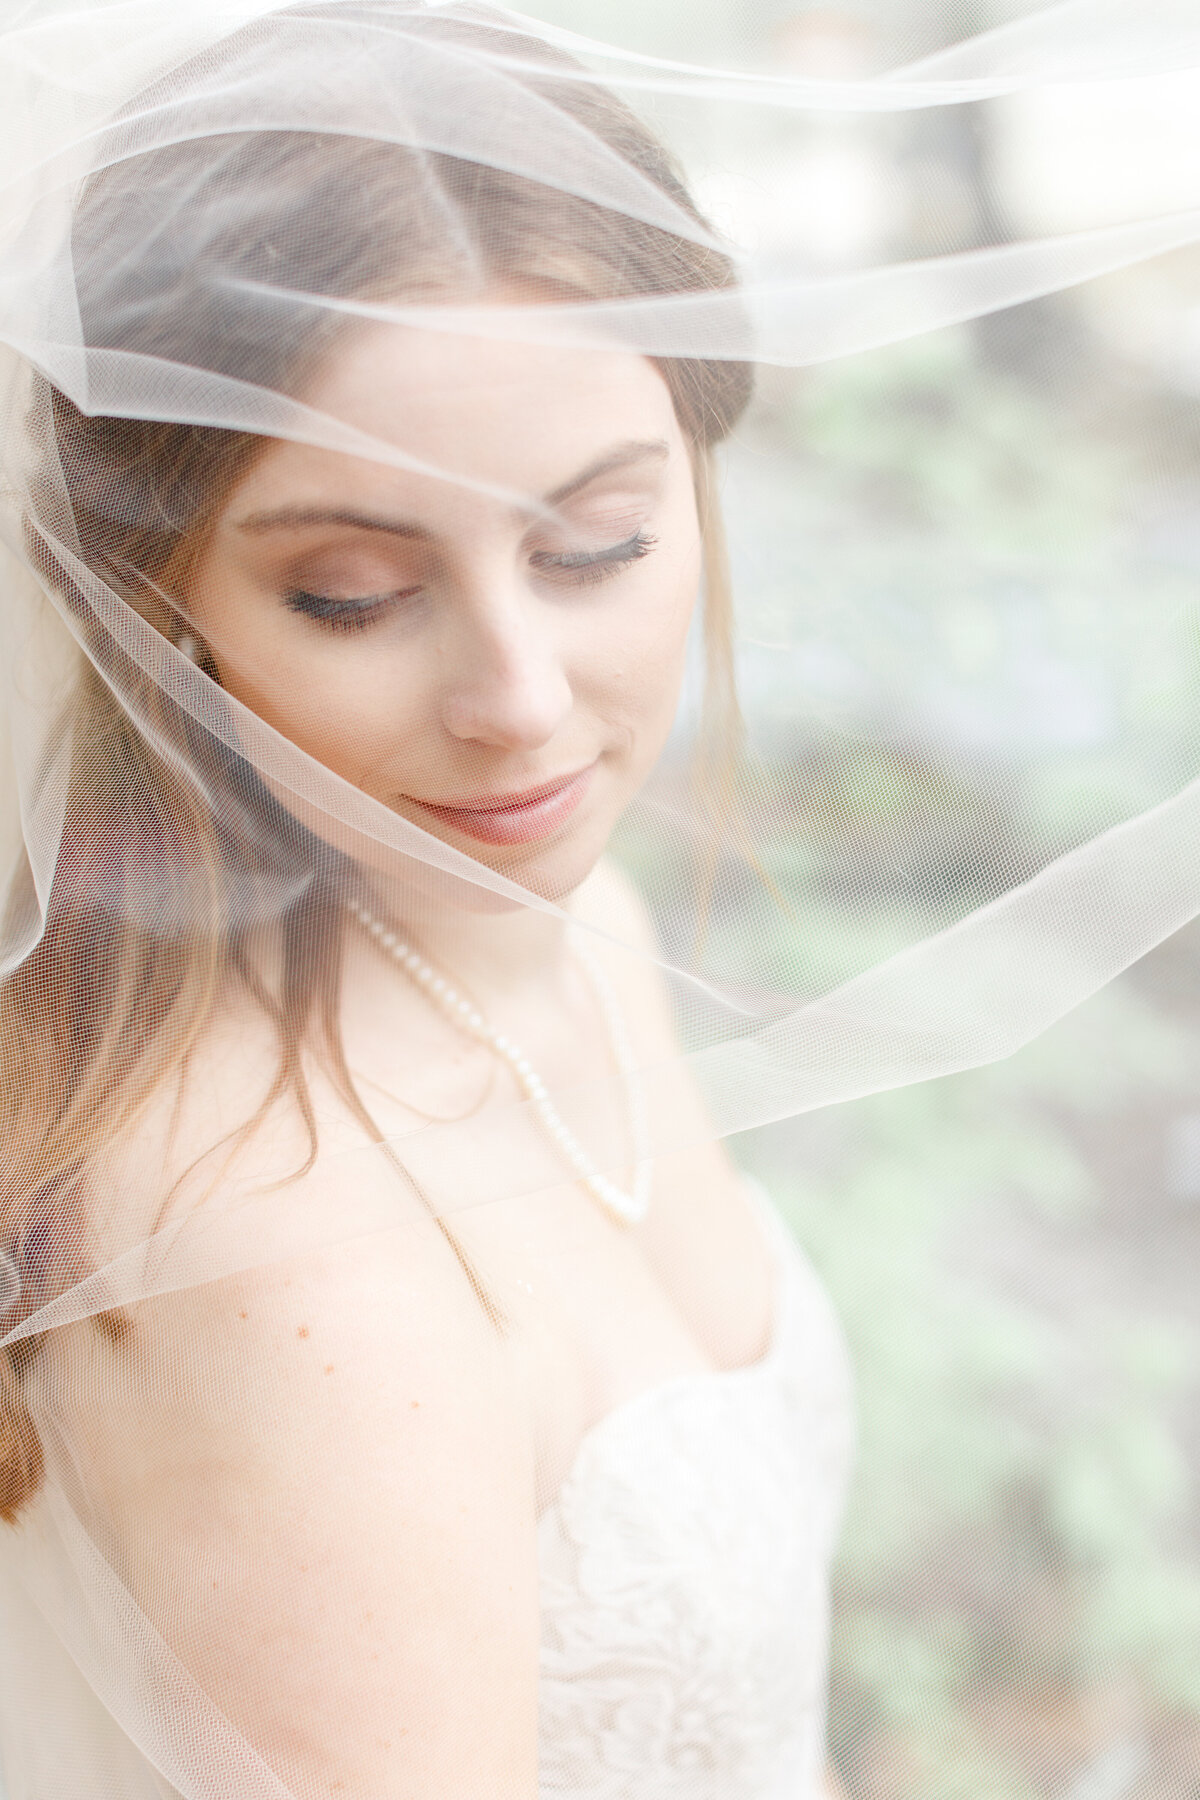 wedding photographer in texas captures bride through sheer veil